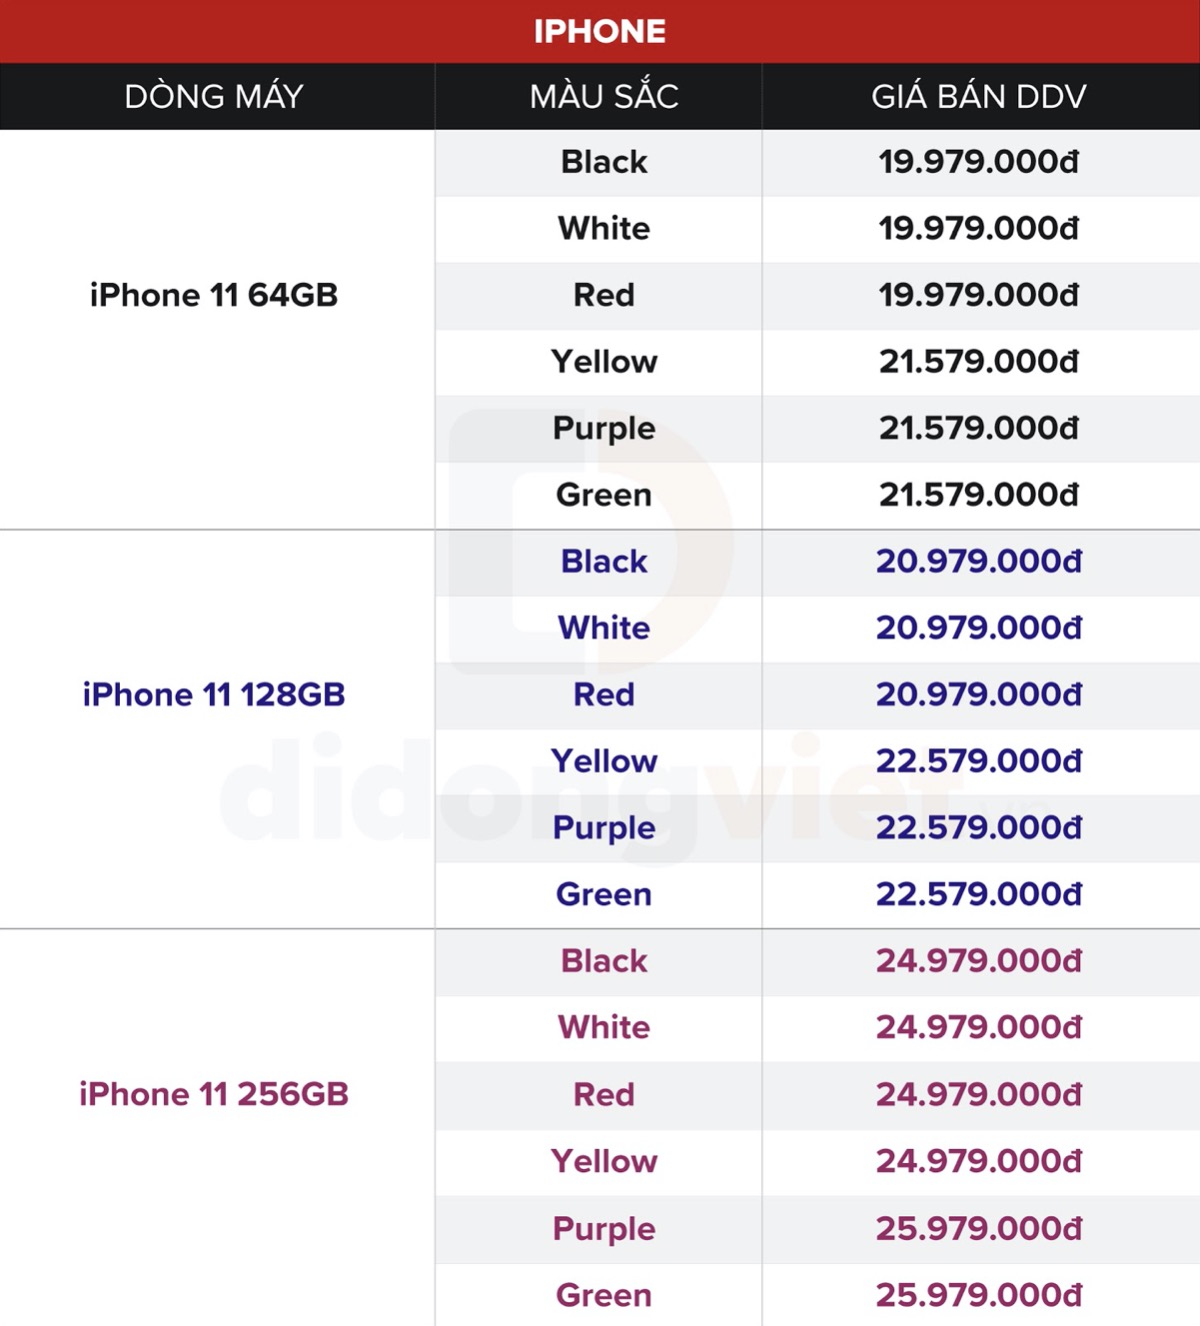 Cách Shark Hưng và sao Việt nổi tiếng chọn iPhone 11 Pro Max